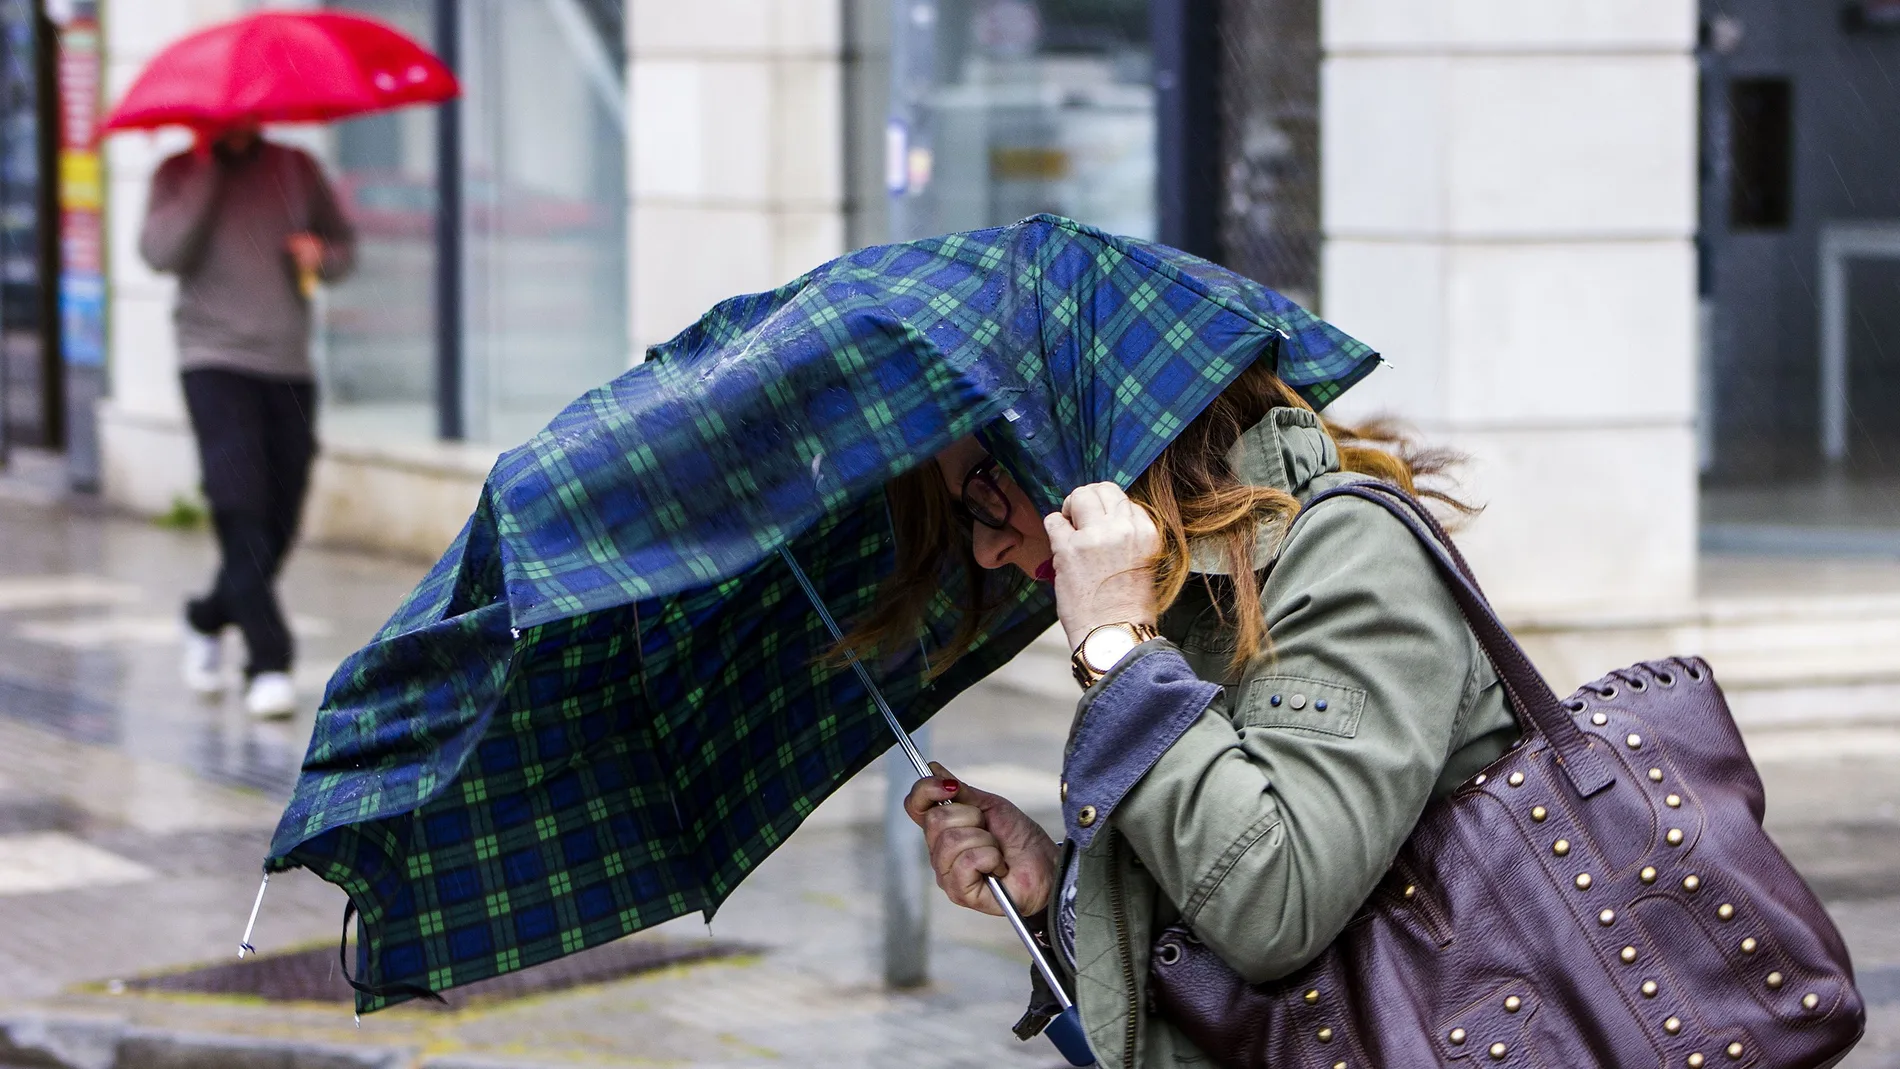 Una mujer intenta sujetar el paraguas que le protege de la lluvia debido al fuerte viento